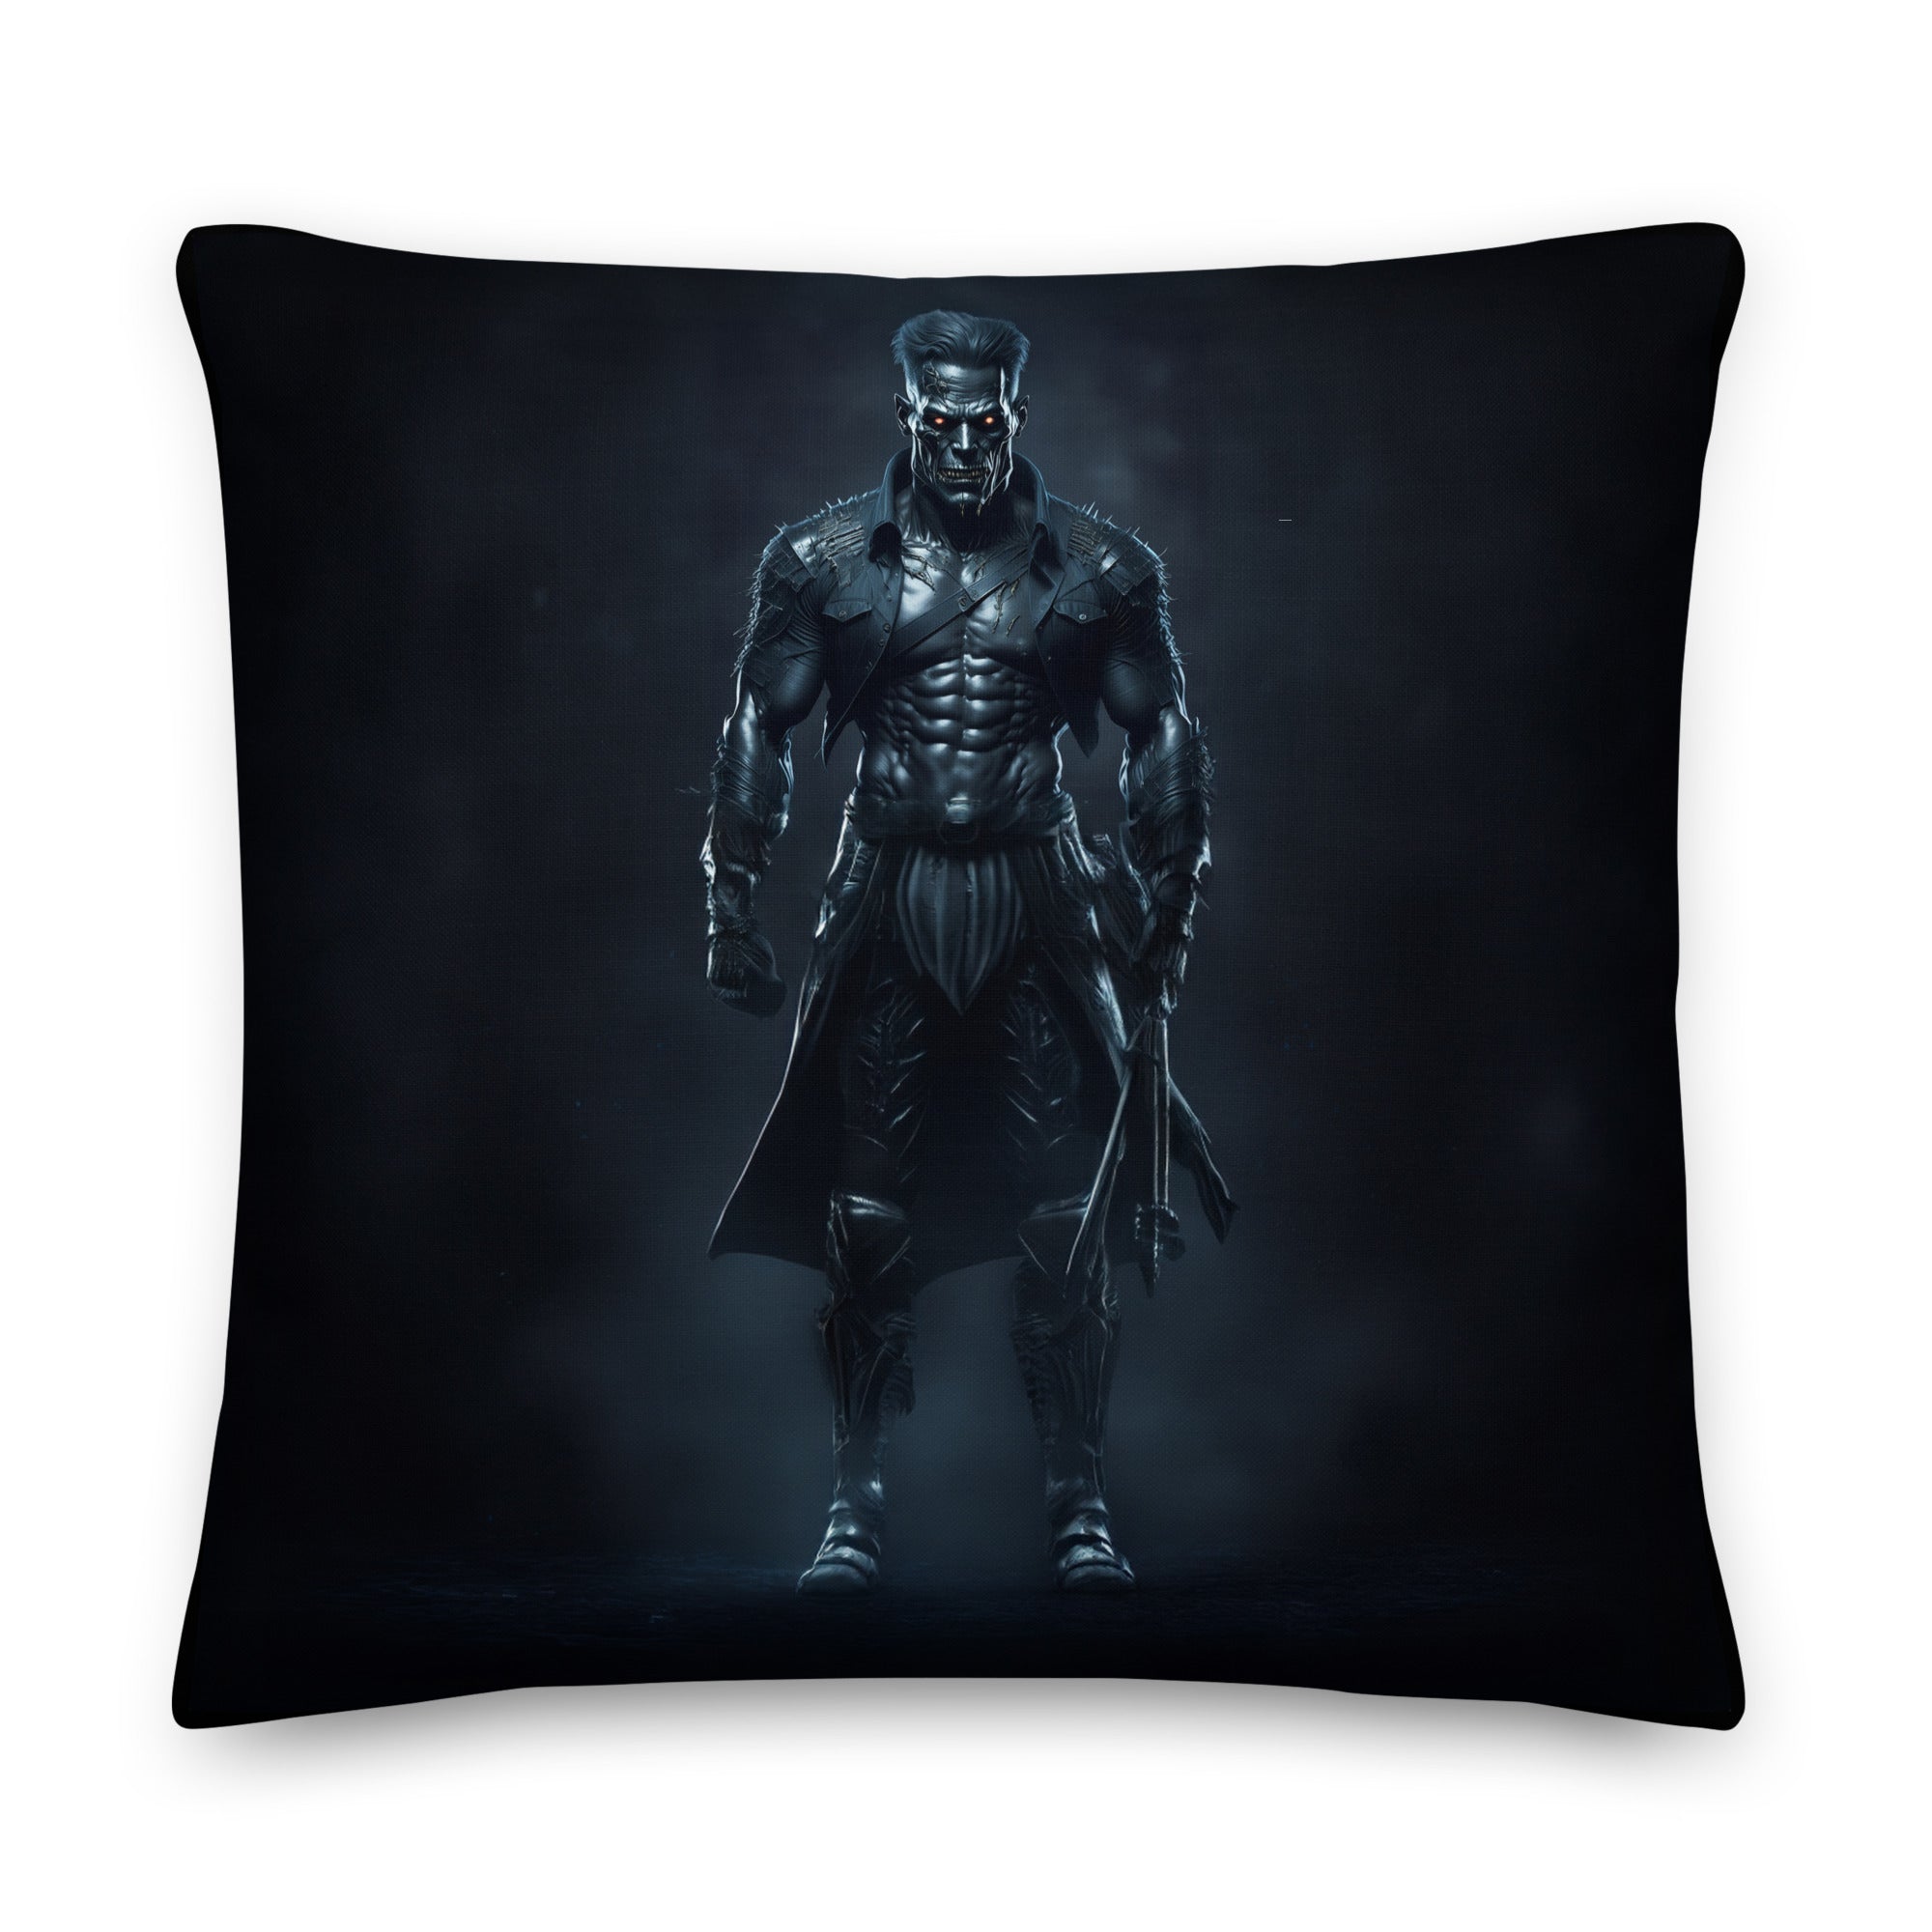 The Monster Squad "Frankenstein" Premium Pillow